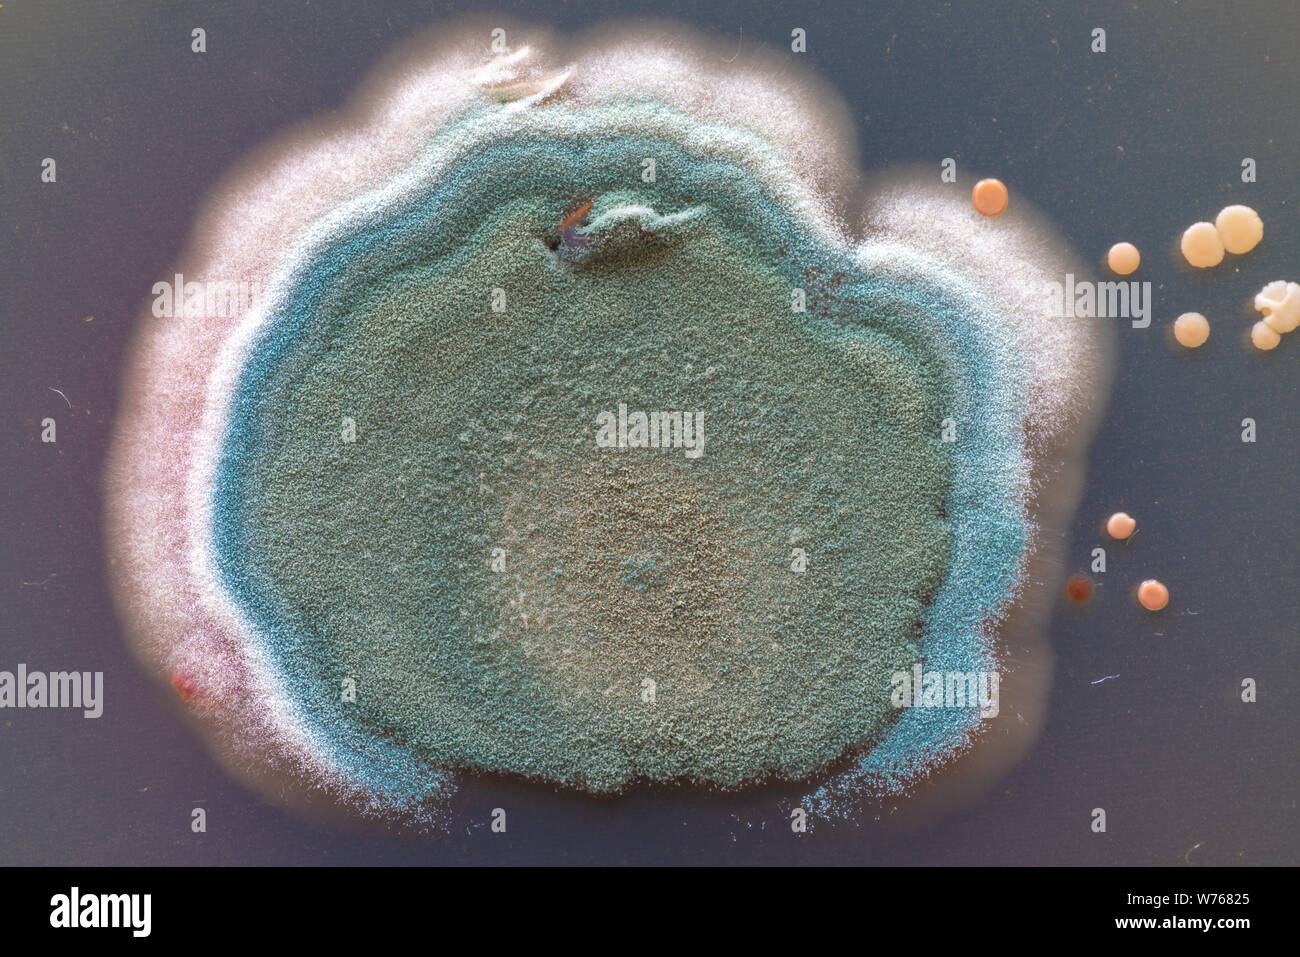 Les colonies de champignons et bactéries sur agar dans une boîte de Petri Banque D'Images